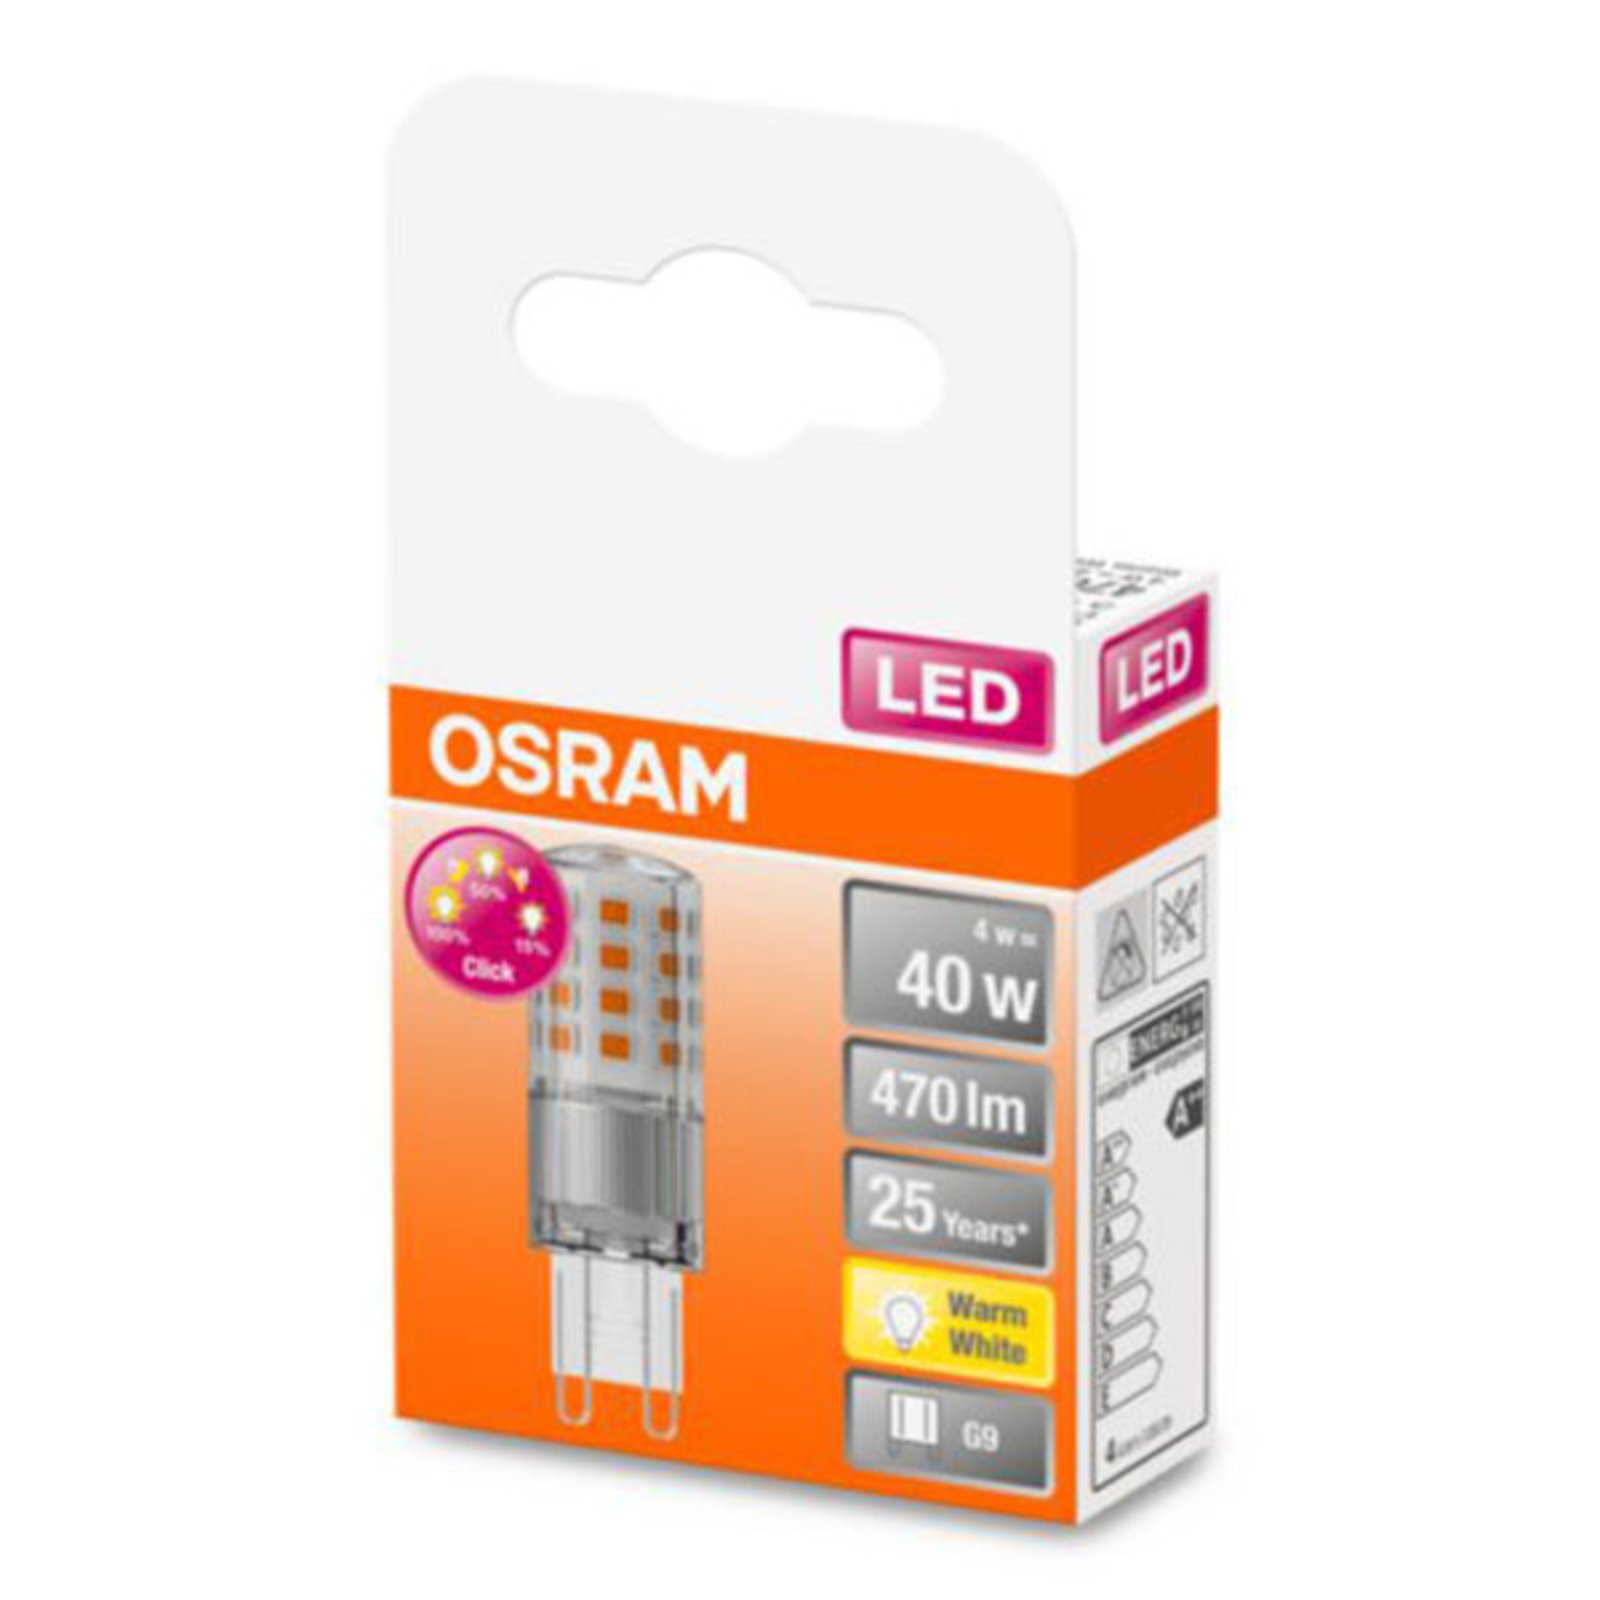 OSRAM LED žárovka G9 4W 2 700 K čirá stmívací